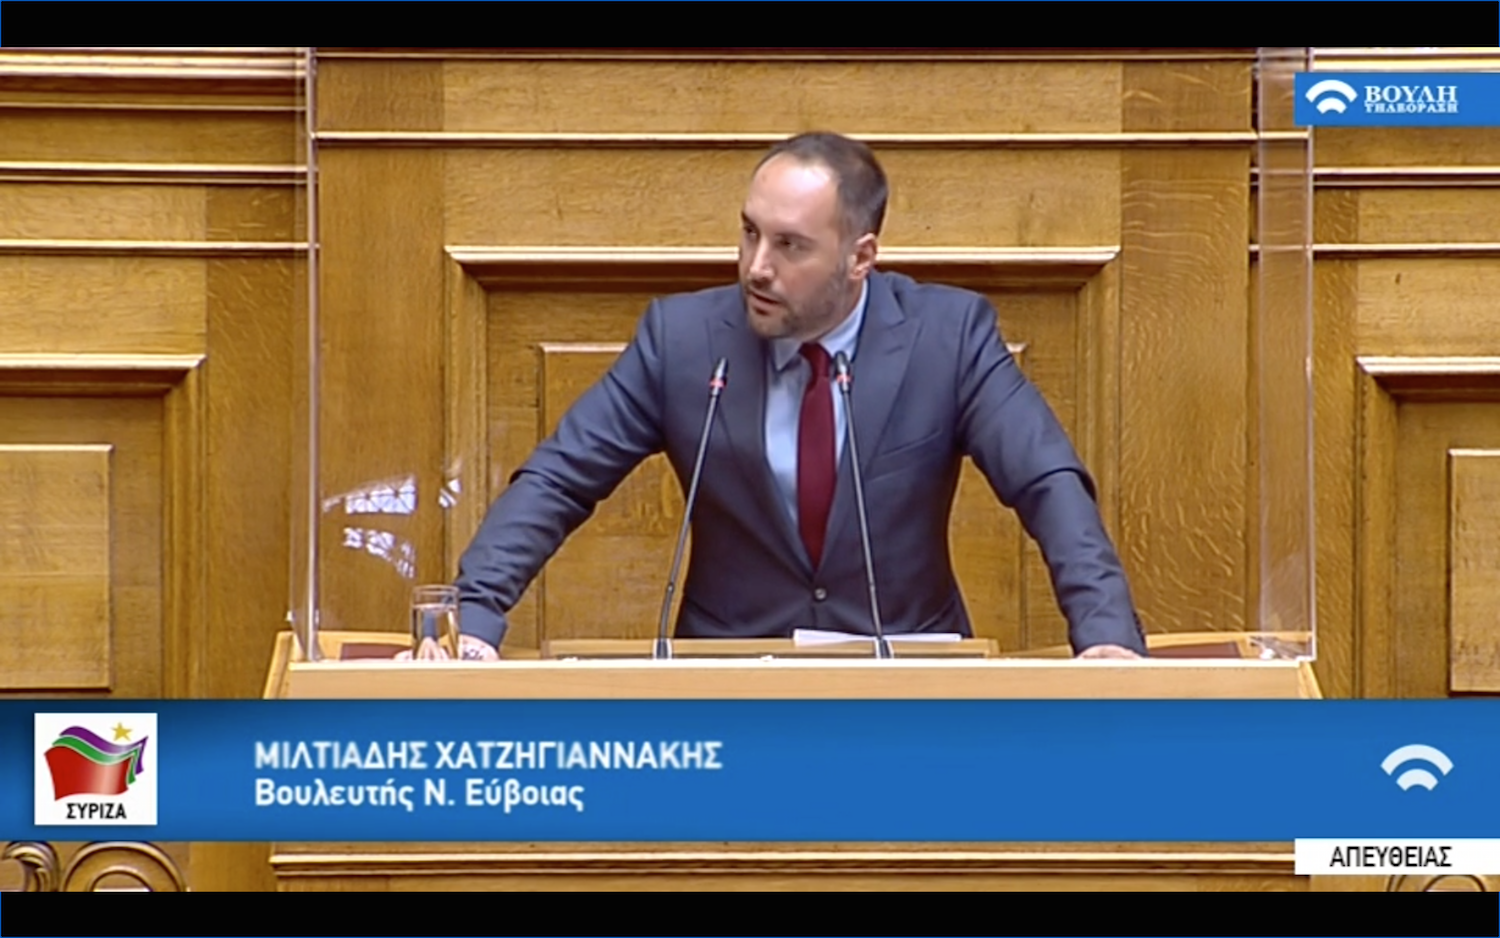 Μ. Χατζηγιαννάκης: Για την ανάγκη επιτάχυνσης στην έκδοση των δικαστικών αποφάσεων